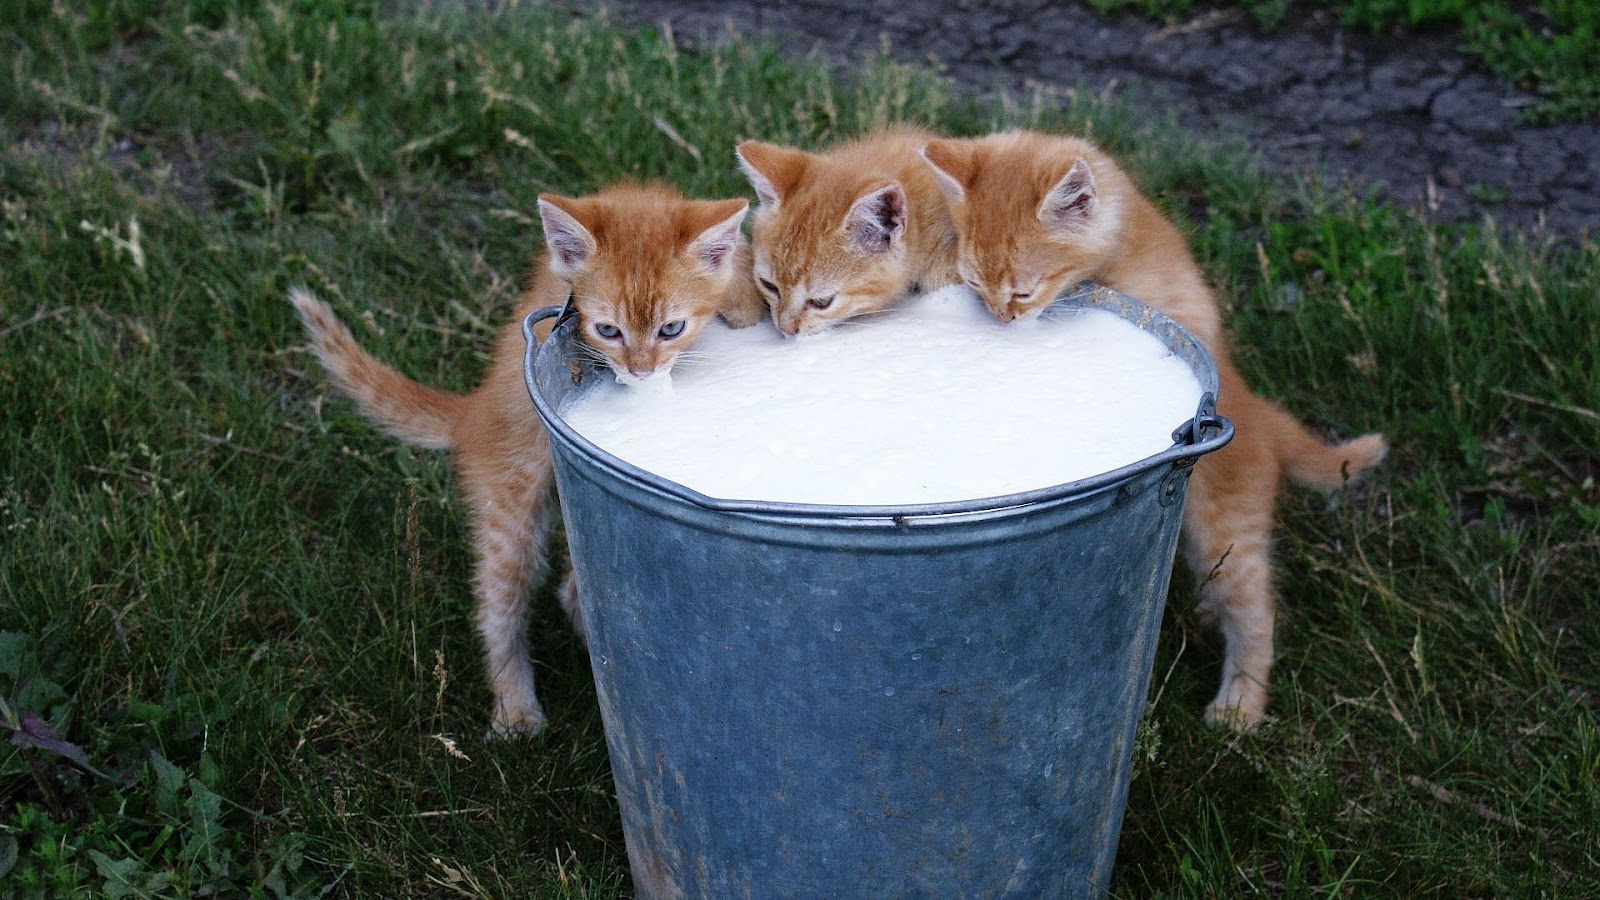 http://1.bp.blogspot.com/-eEQmIiA_W_0/UCJUuYmlidI/AAAAAAAAAGQ/J1vU_nsulcM/s1600/hd-cats-wallpapers-little-young-cats-drinking-milk-cat-backgrounds.jpg